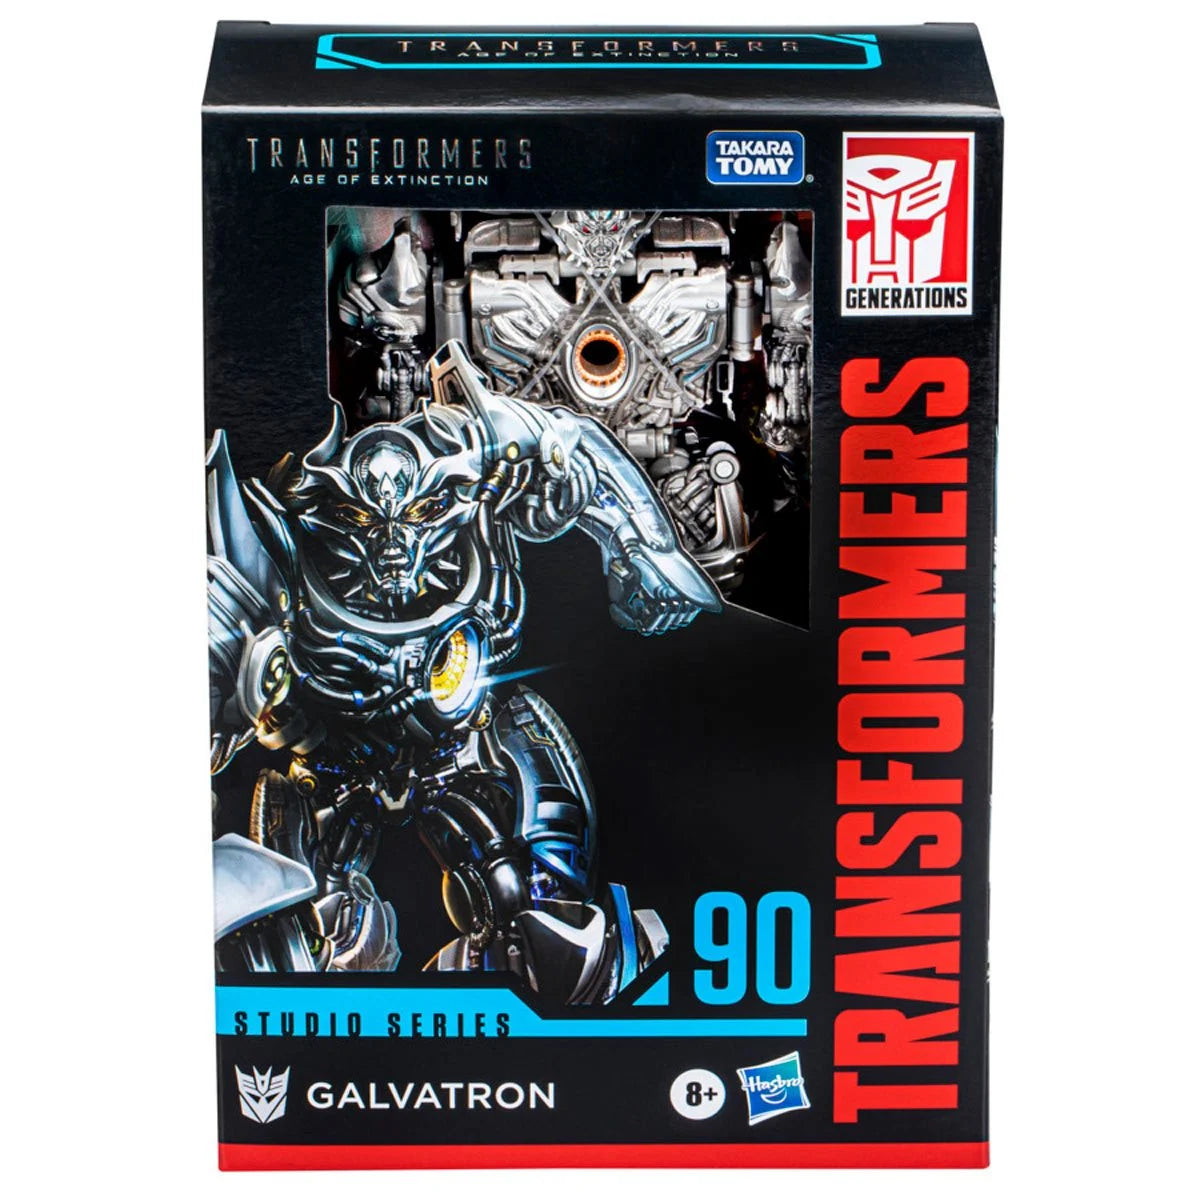 Transformers Studio Series Voyager Galvatron Hasbro